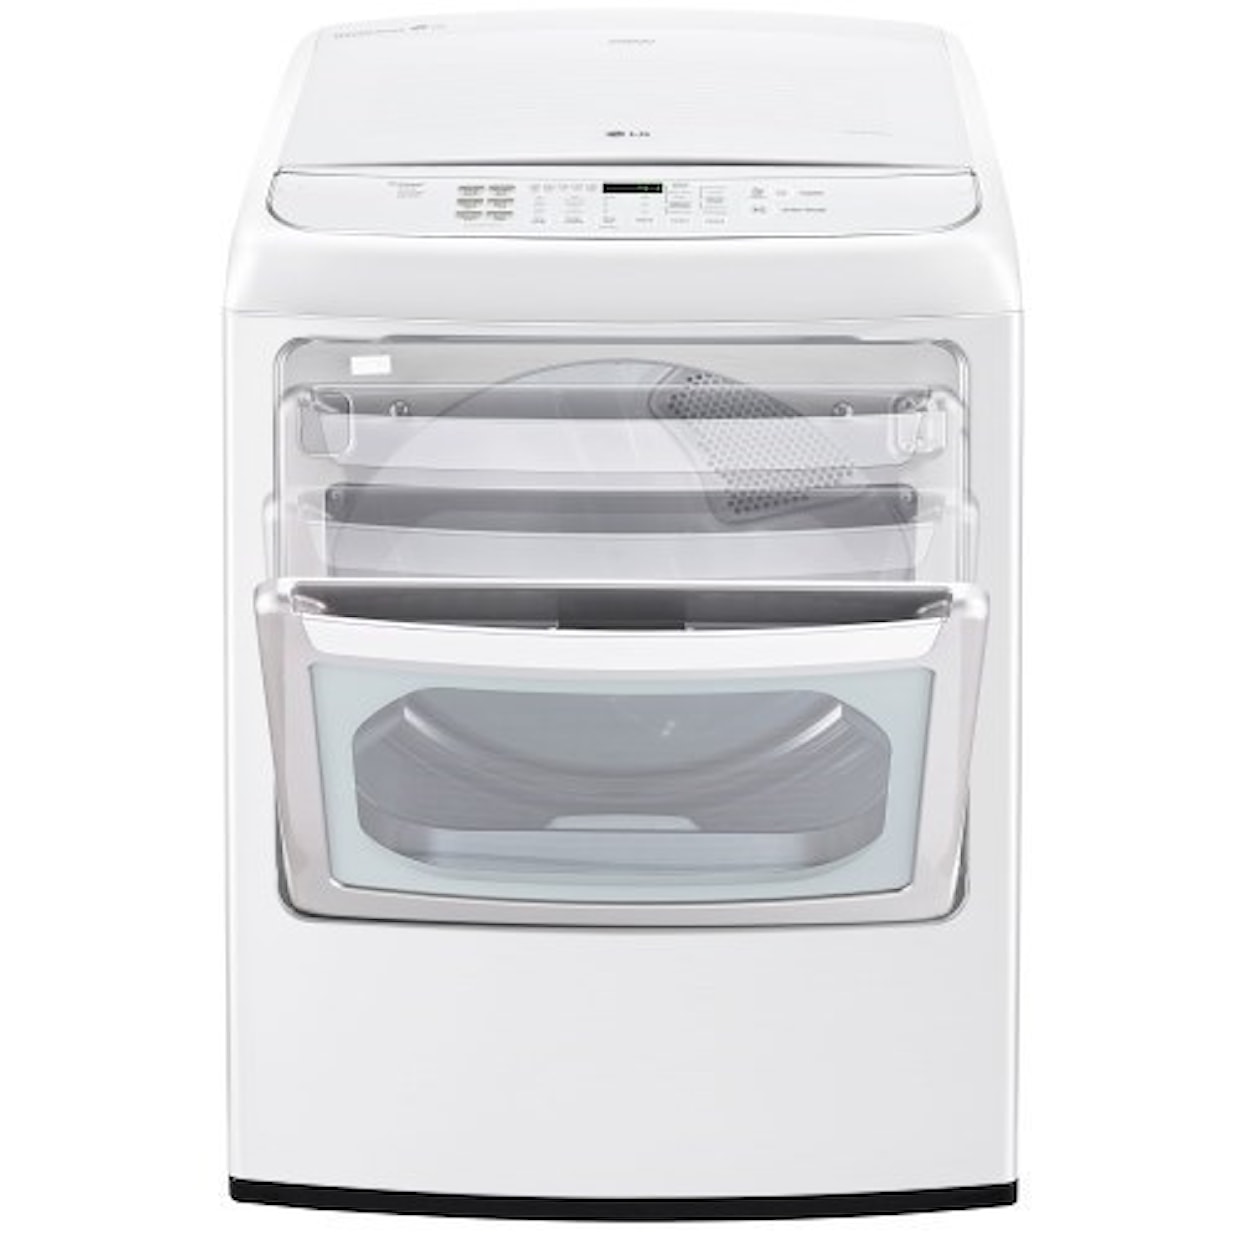 LG Appliances Dryers 7.3 Cu. Ft. Front Control Electric Dryer